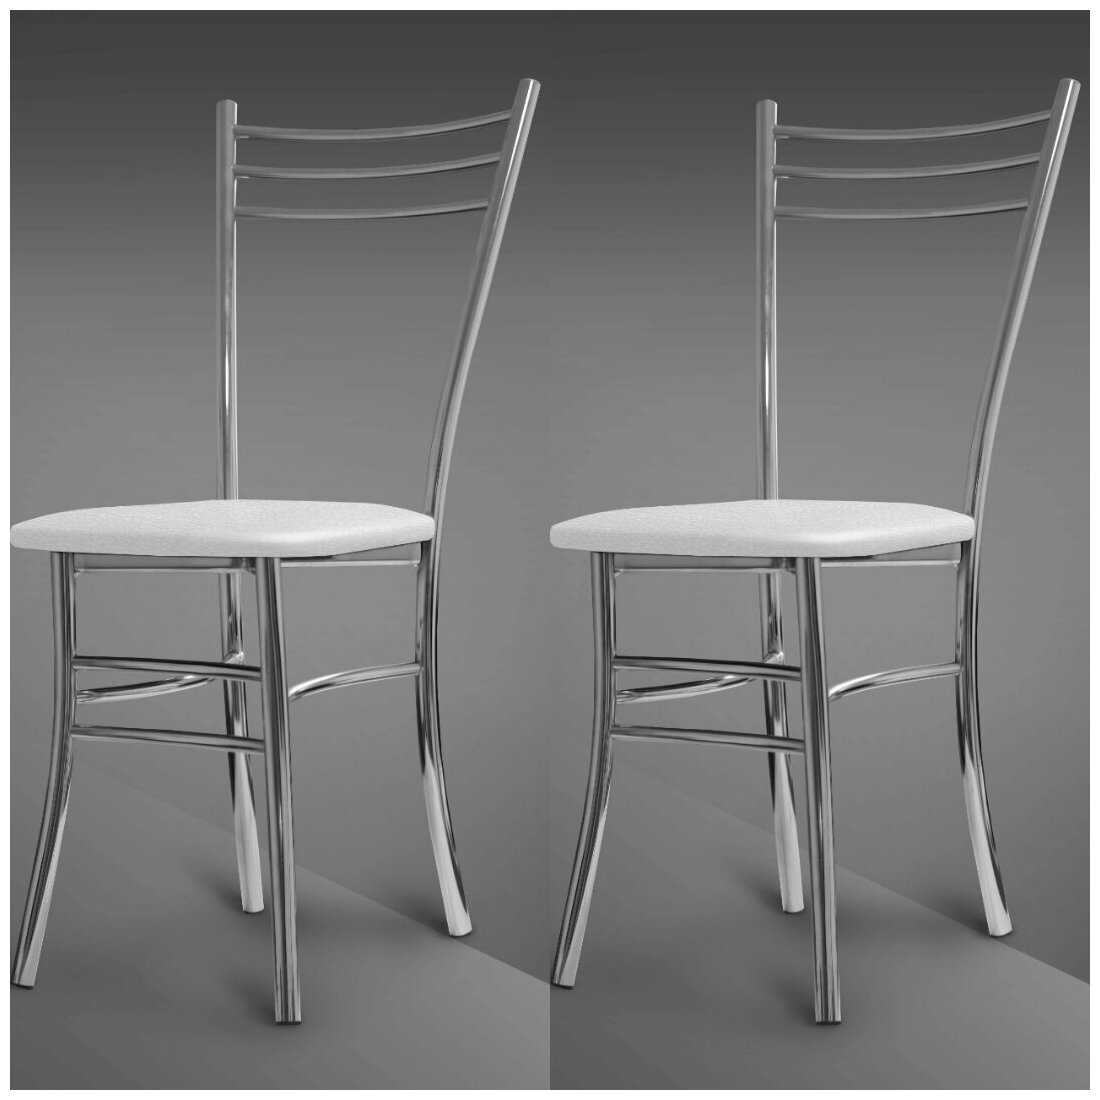 Стулья столовые Триология для кухни кафе столовой дома дачи не икеа хром с мягким сиденьем недорогие стулья экокожа